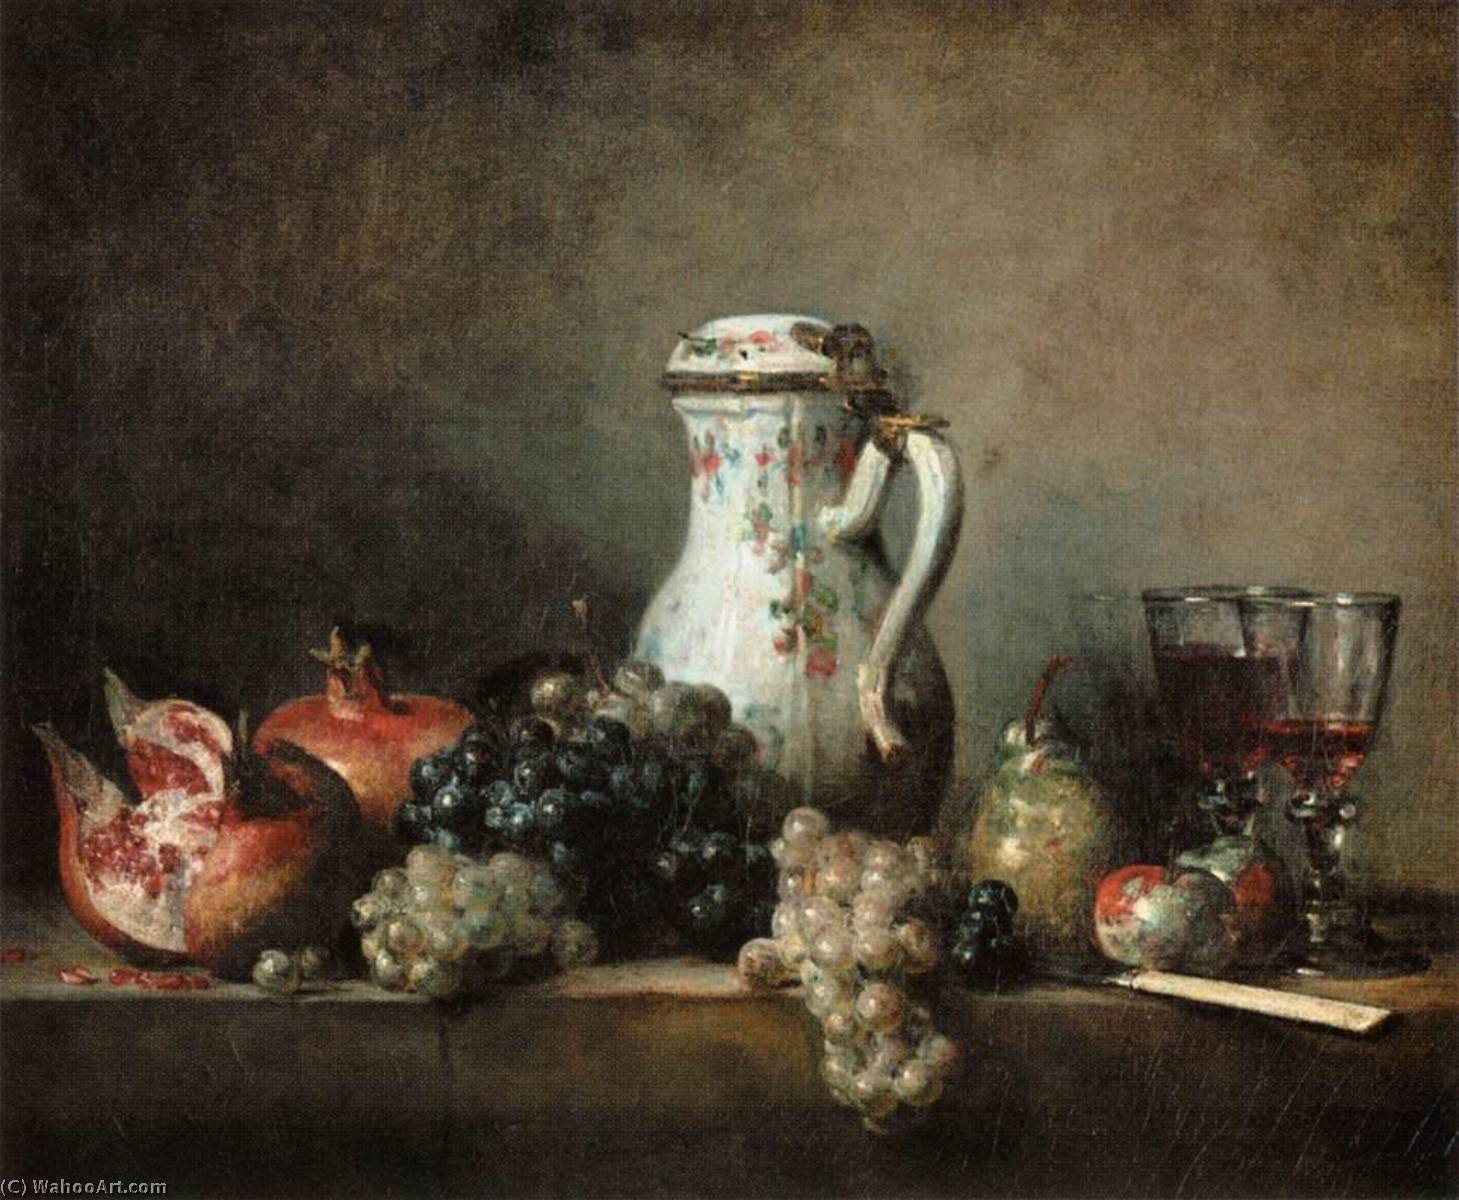 WikiOO.org - Enciklopedija dailės - Tapyba, meno kuriniai Jean-Baptiste Simeon Chardin - Grapes and Pomegranates